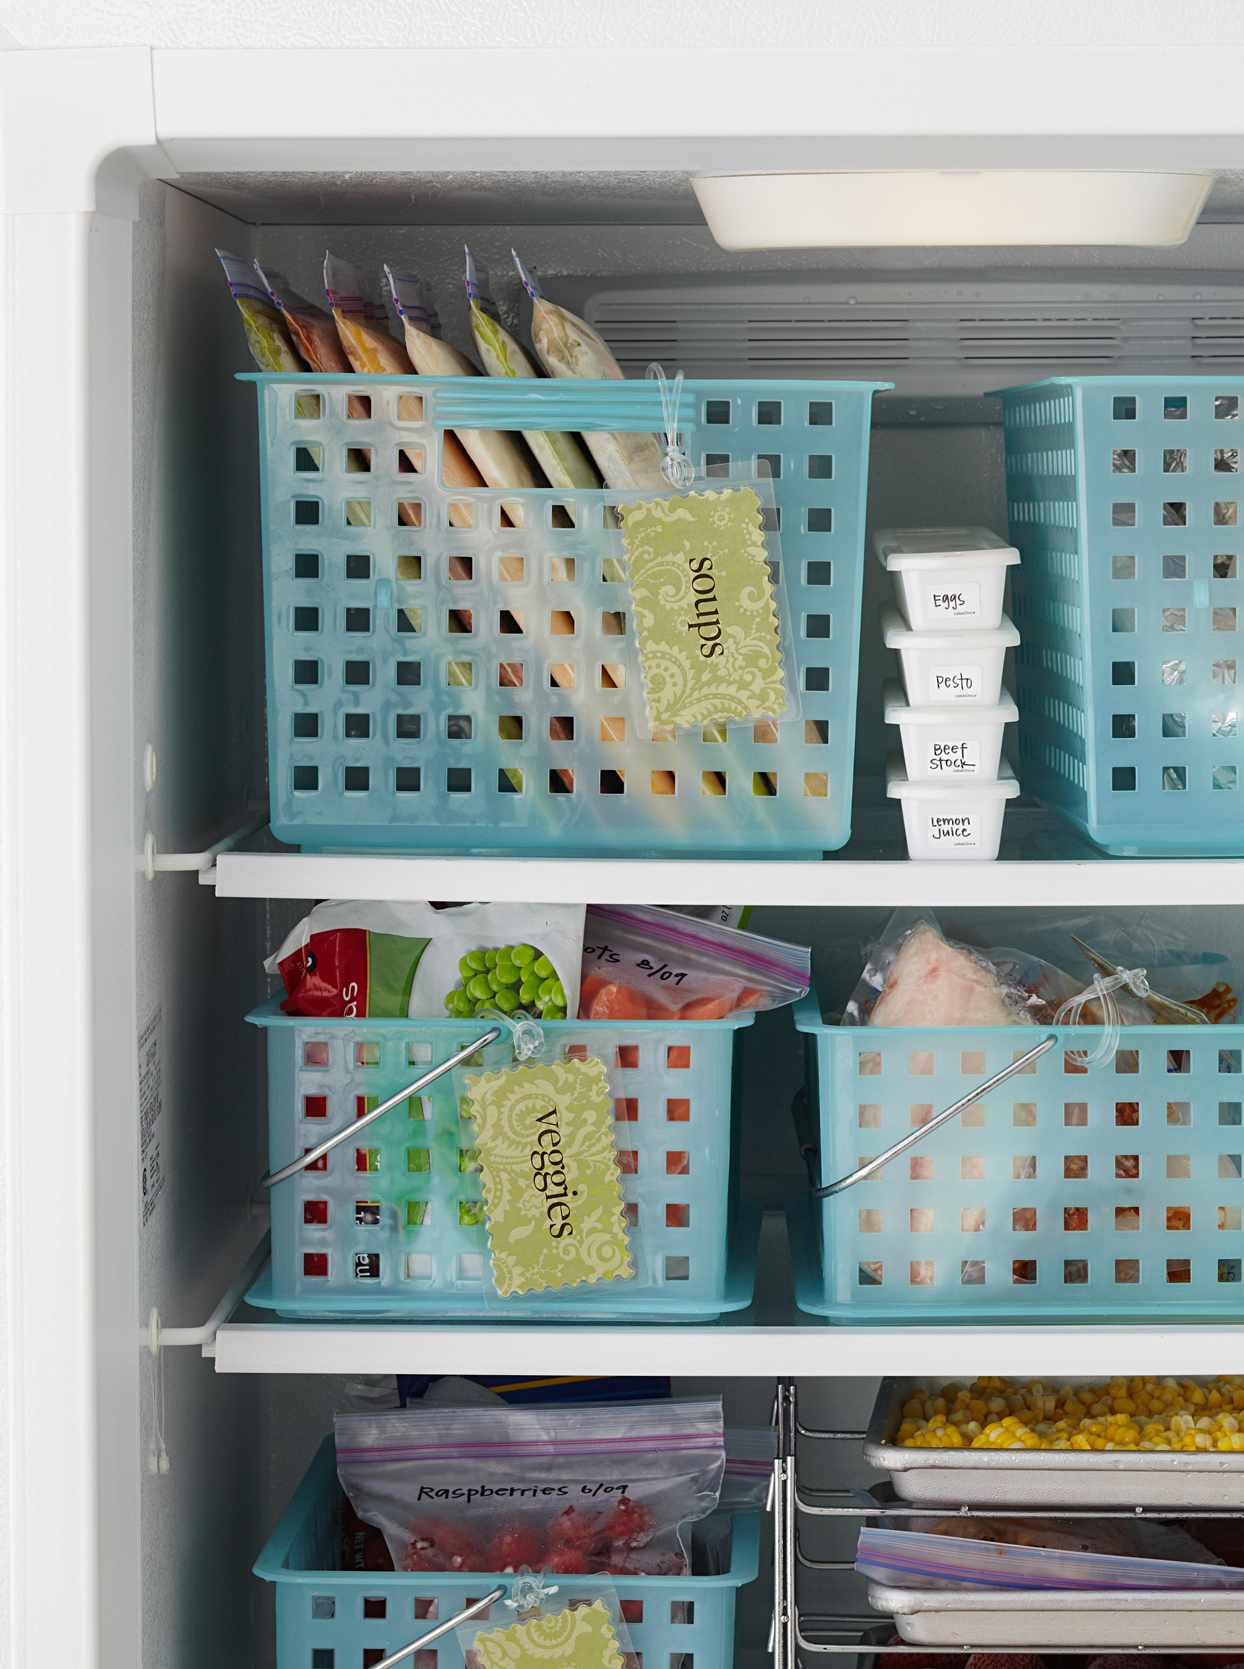 blue freezer storage baskets